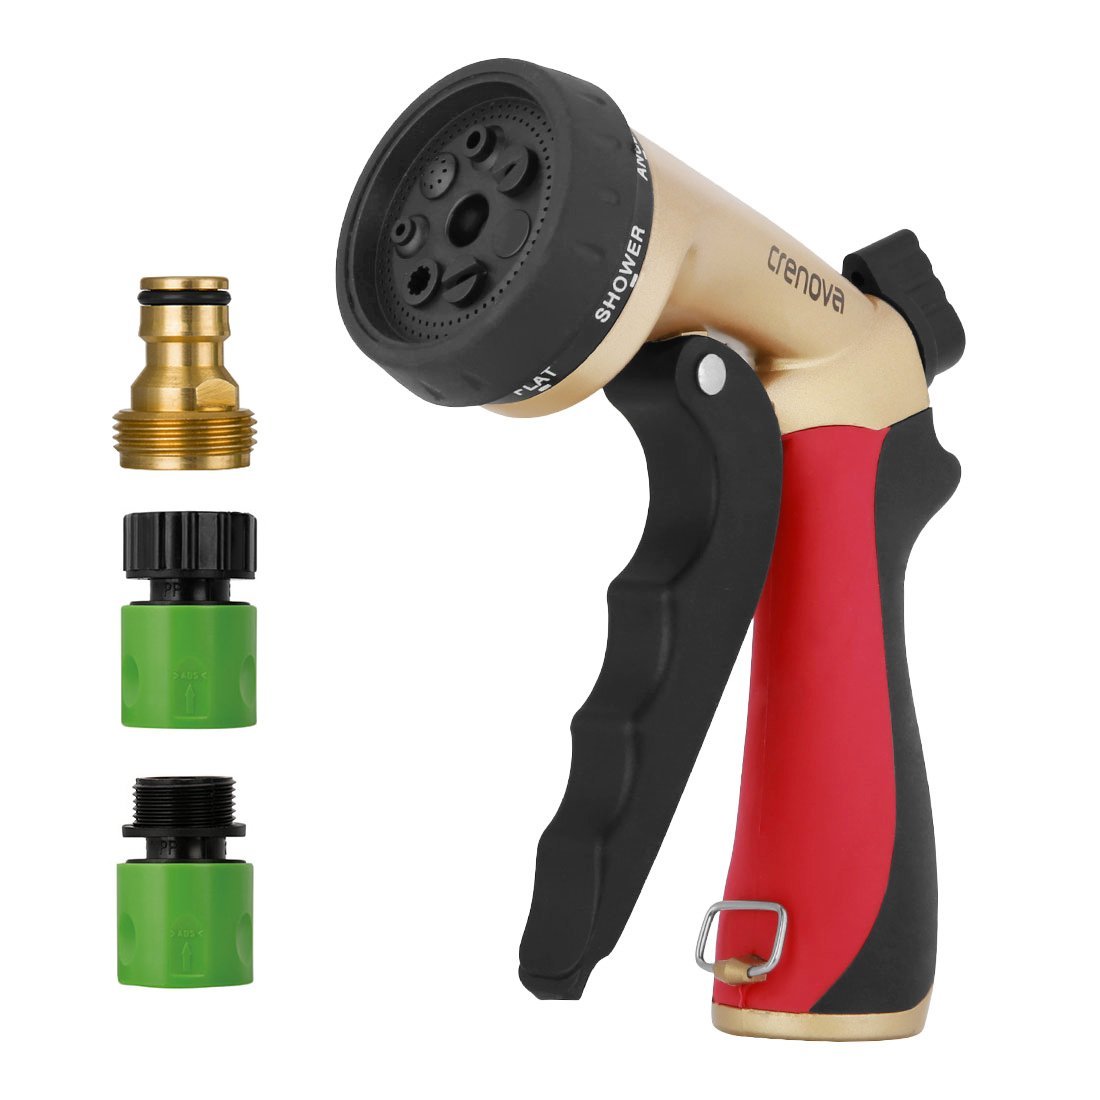 Crenova Hose Nozzle Garden Spray Water Gun Jet High Pressure Adjustable Washer 